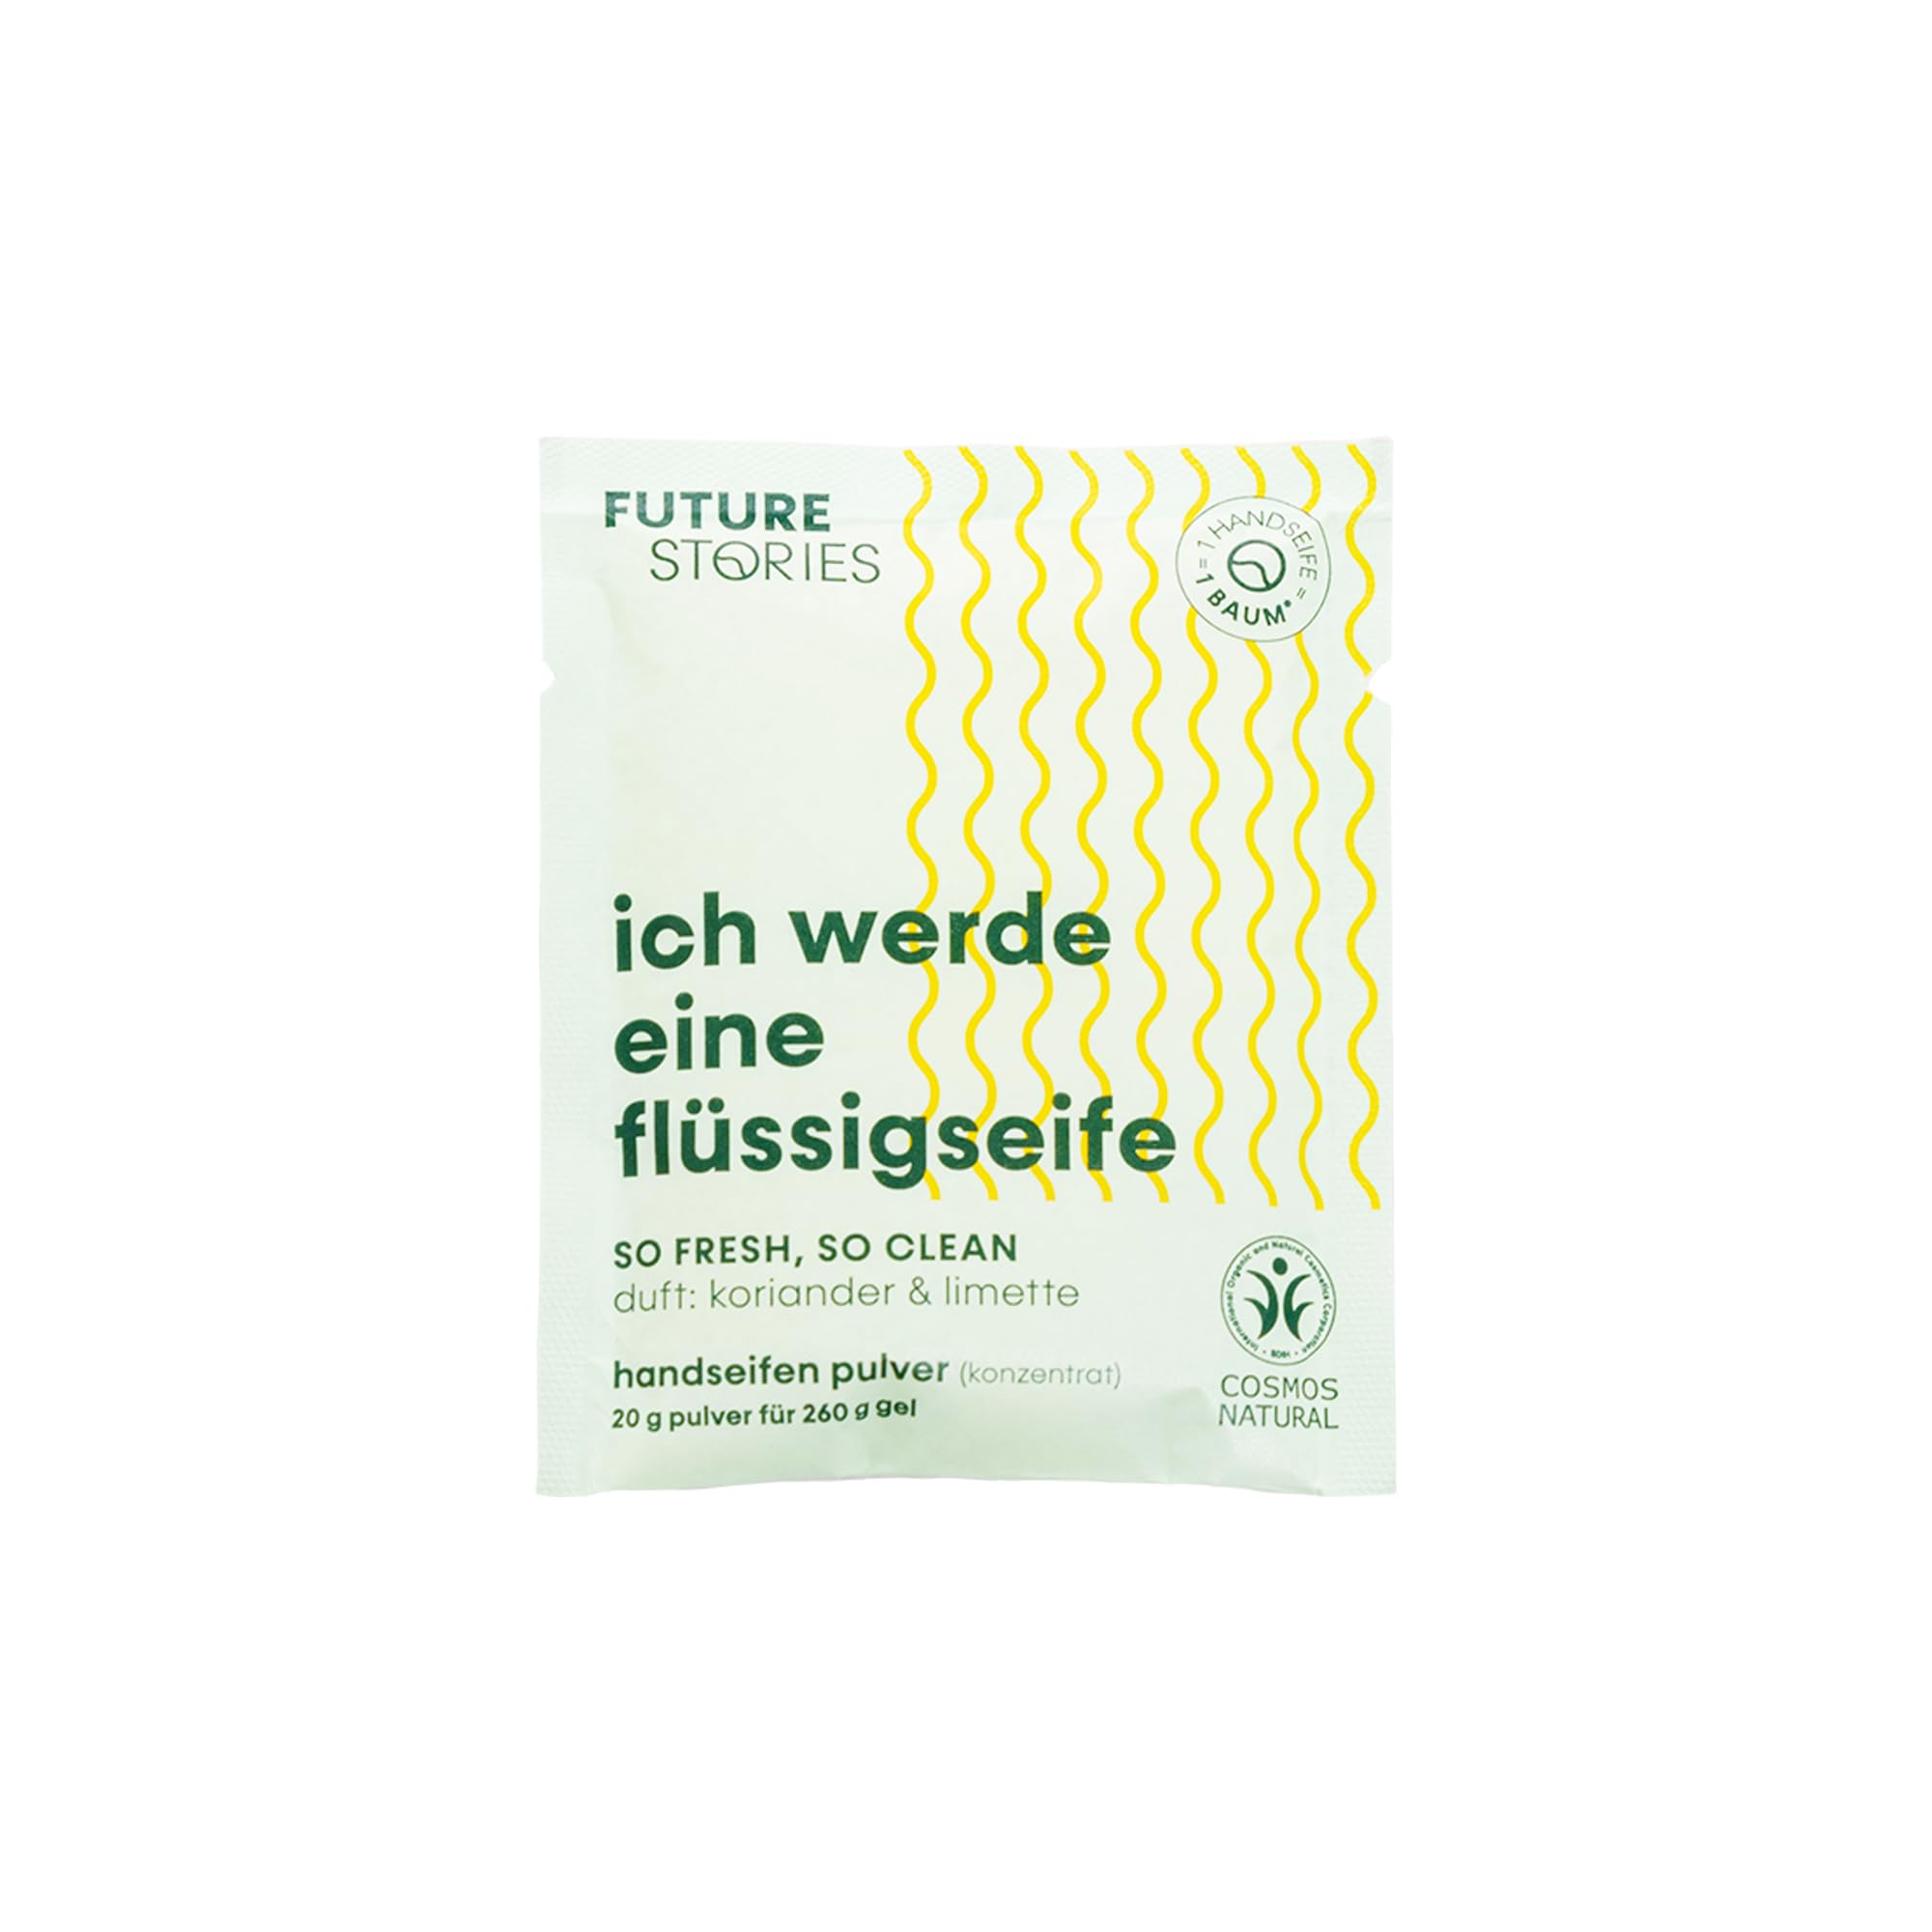 Future Stories Pulver für flüssige Handseife - mit Aloe Vera, nachhaltig vegan - 6er Pack (6x 20 g) Koriander, Limette